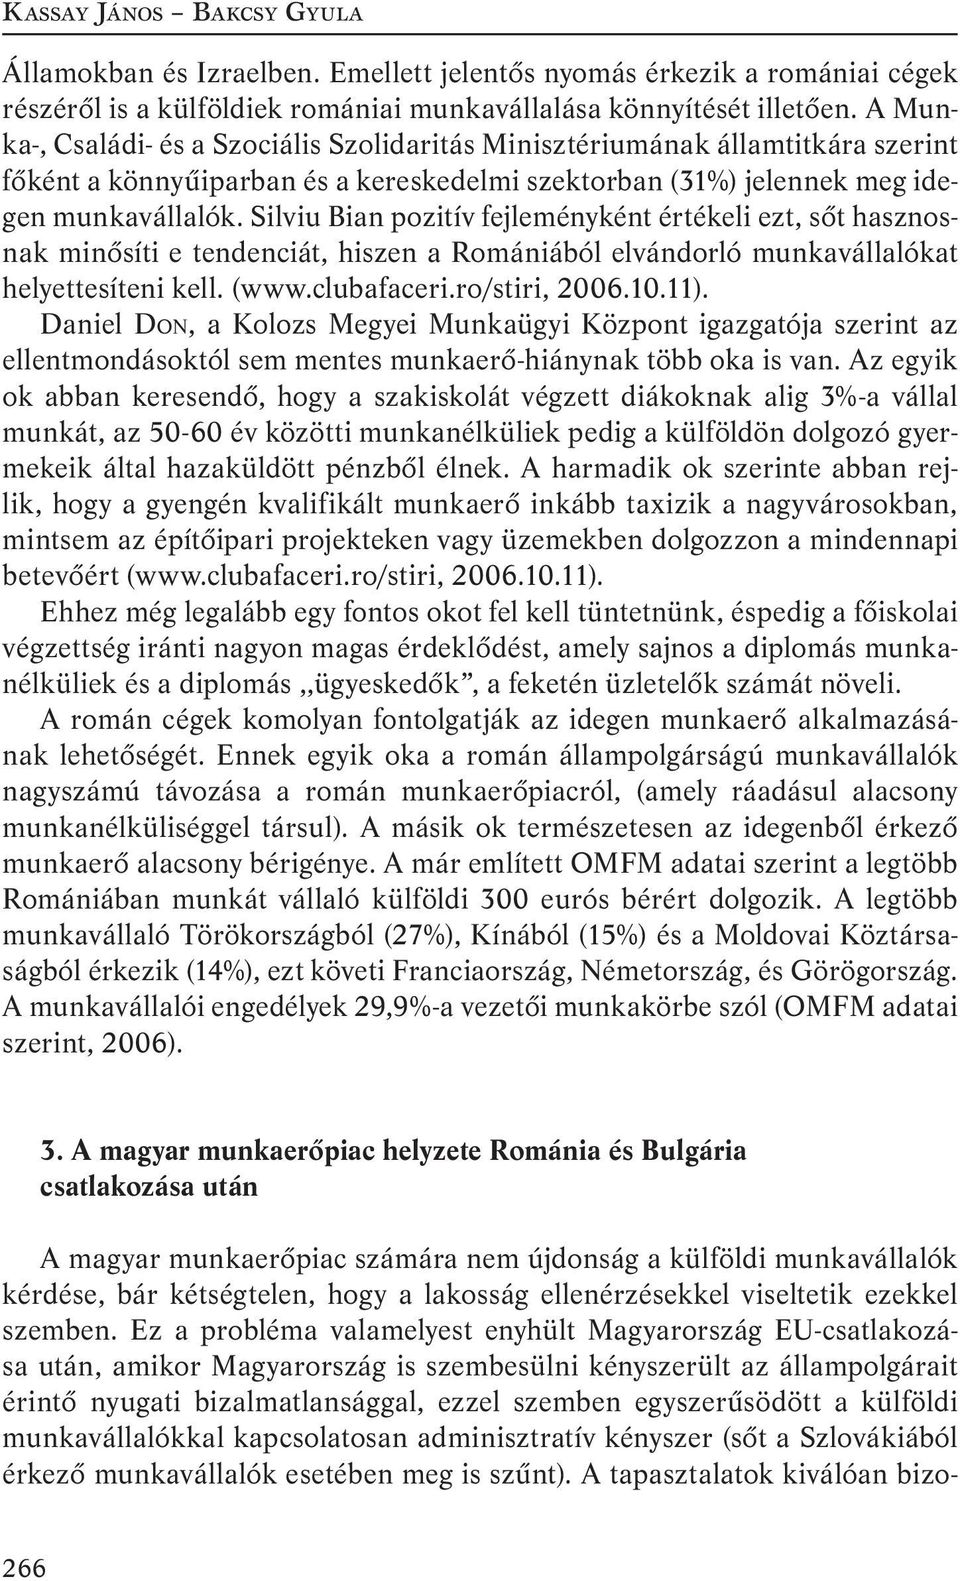 Silviu Bian pozitív fejleményként értékeli ezt, sőt hasznosnak minősíti e tendenciát, hiszen a Romániából elvándorló munkavállalókat helyettesíteni kell. (www.clubafaceri.ro/stiri, 2006.10.11).